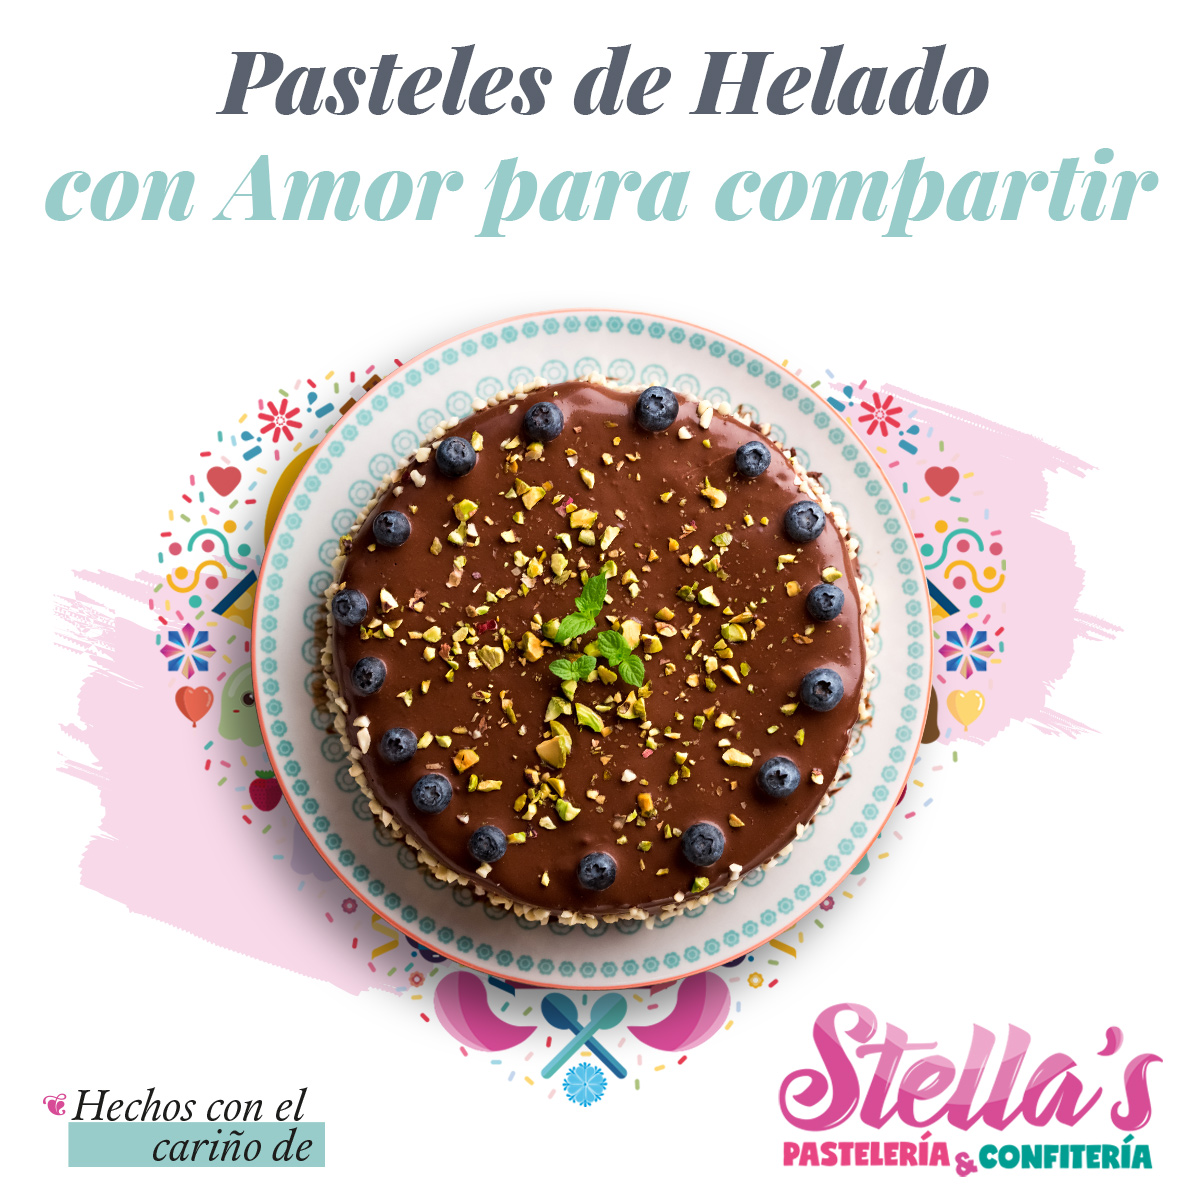 Stella’s Pastelería